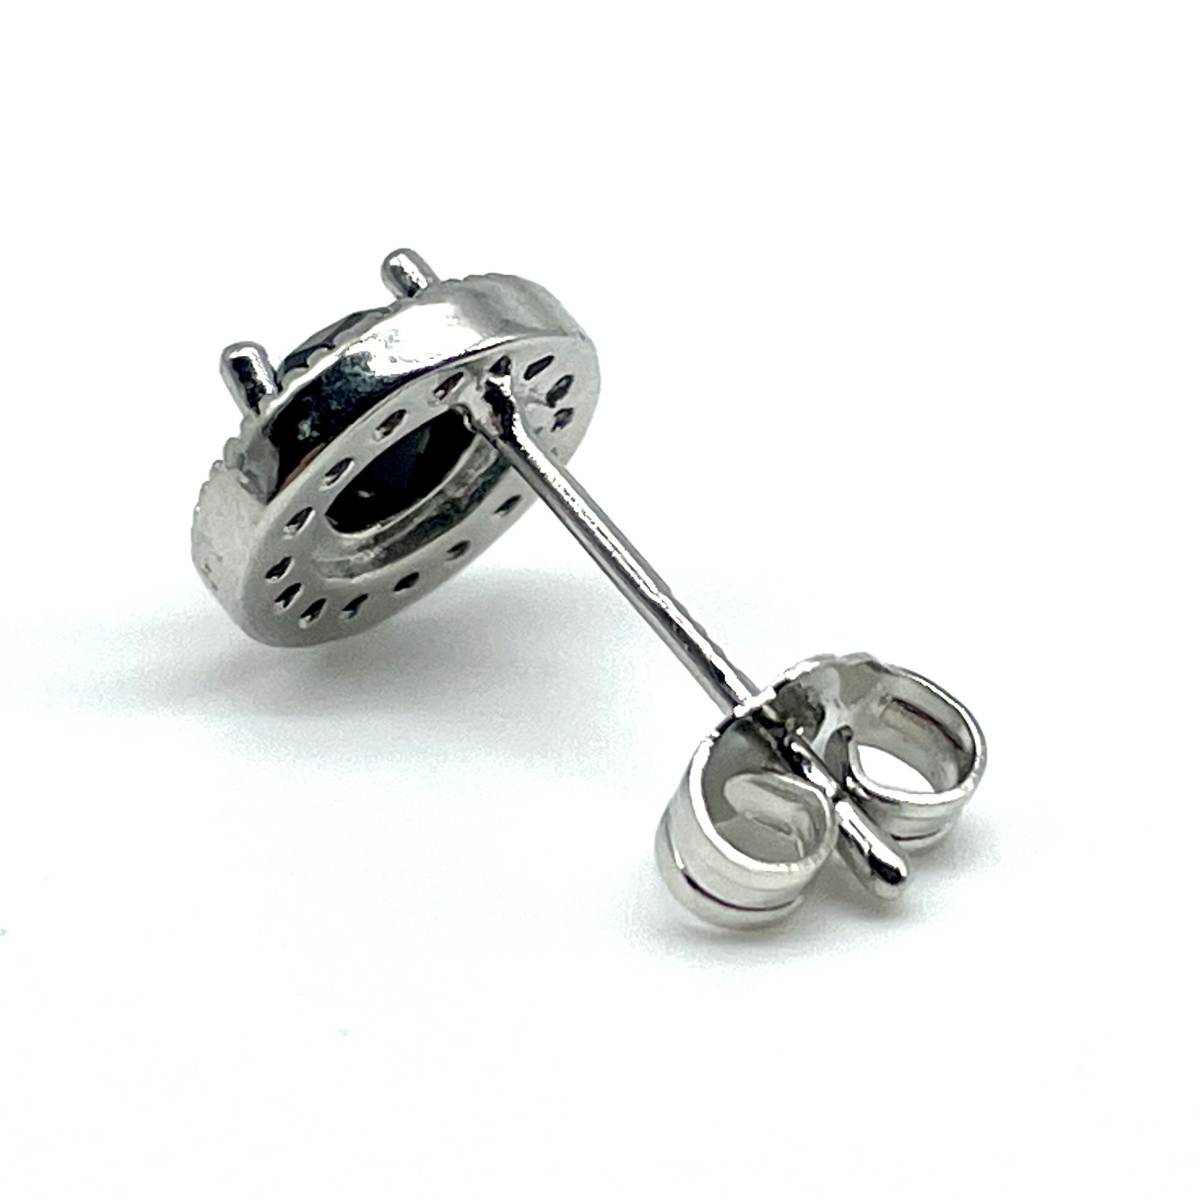 { free shipping } earrings men's silver 925 silver 20G B new goods unused stud earrings catch earrings men's earrings zirconia [PN2645]